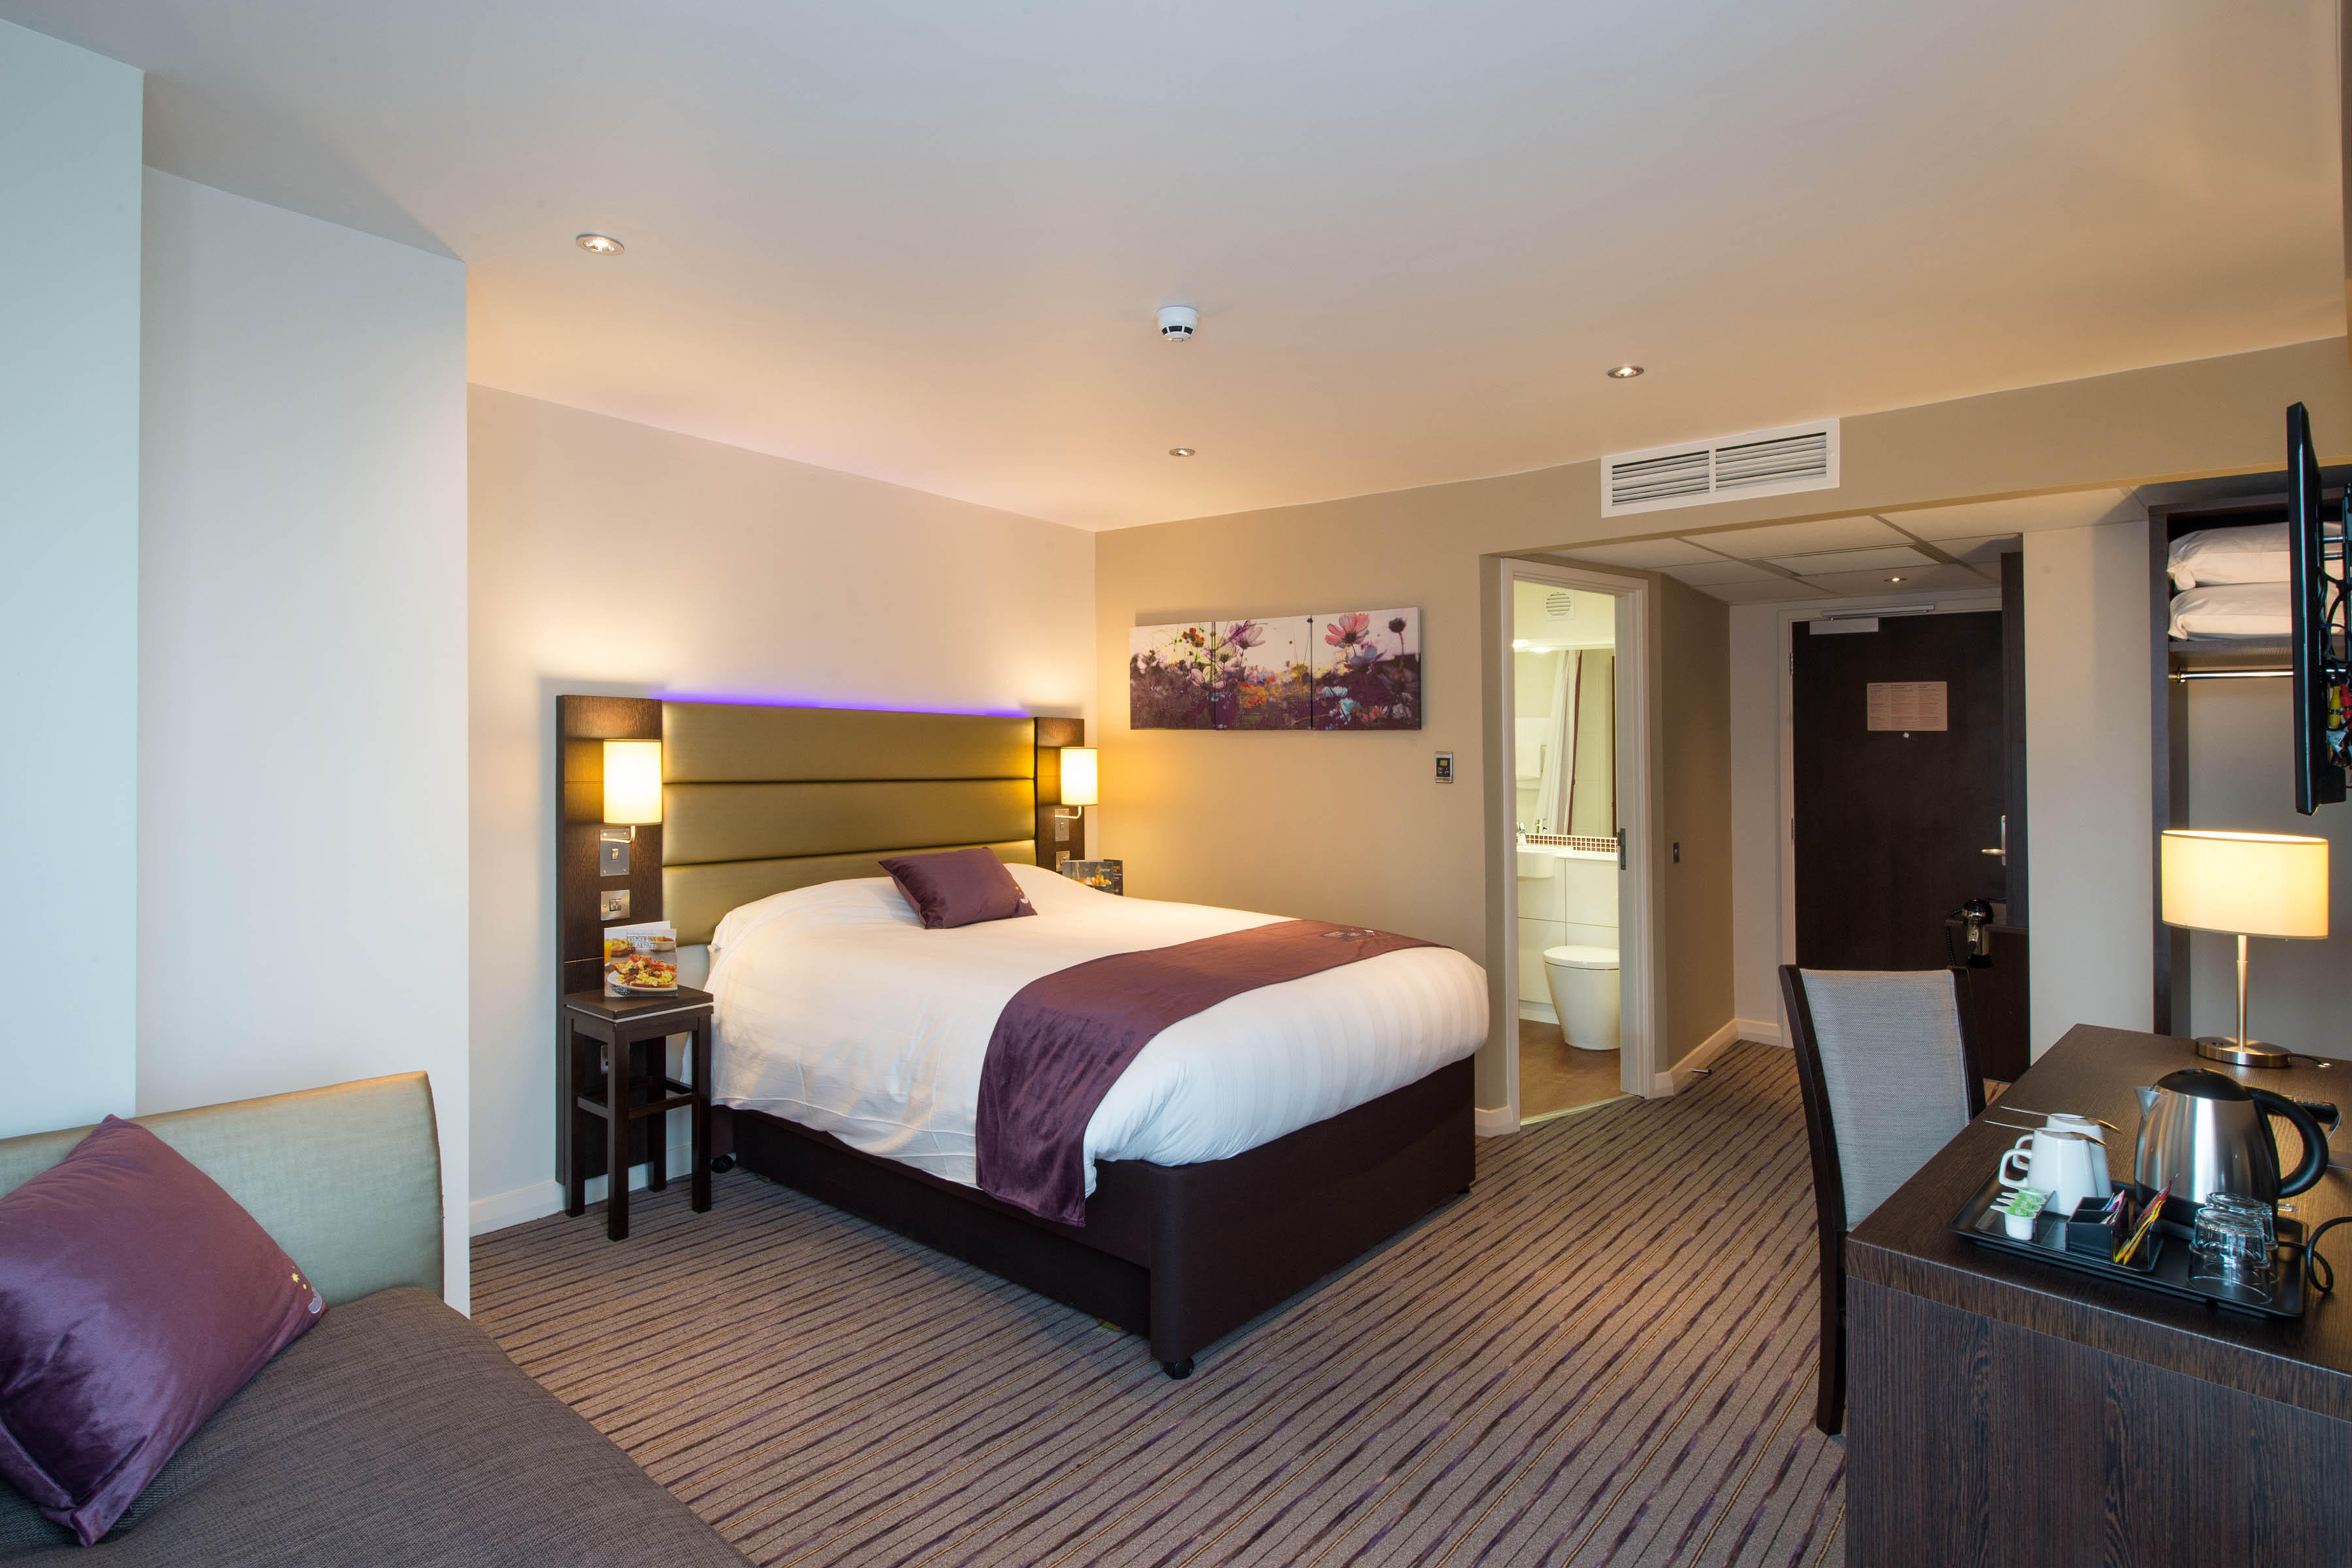 Premier Inn bedroom Premier Inn Manchester City Centre West hotel Salford 03333 219367